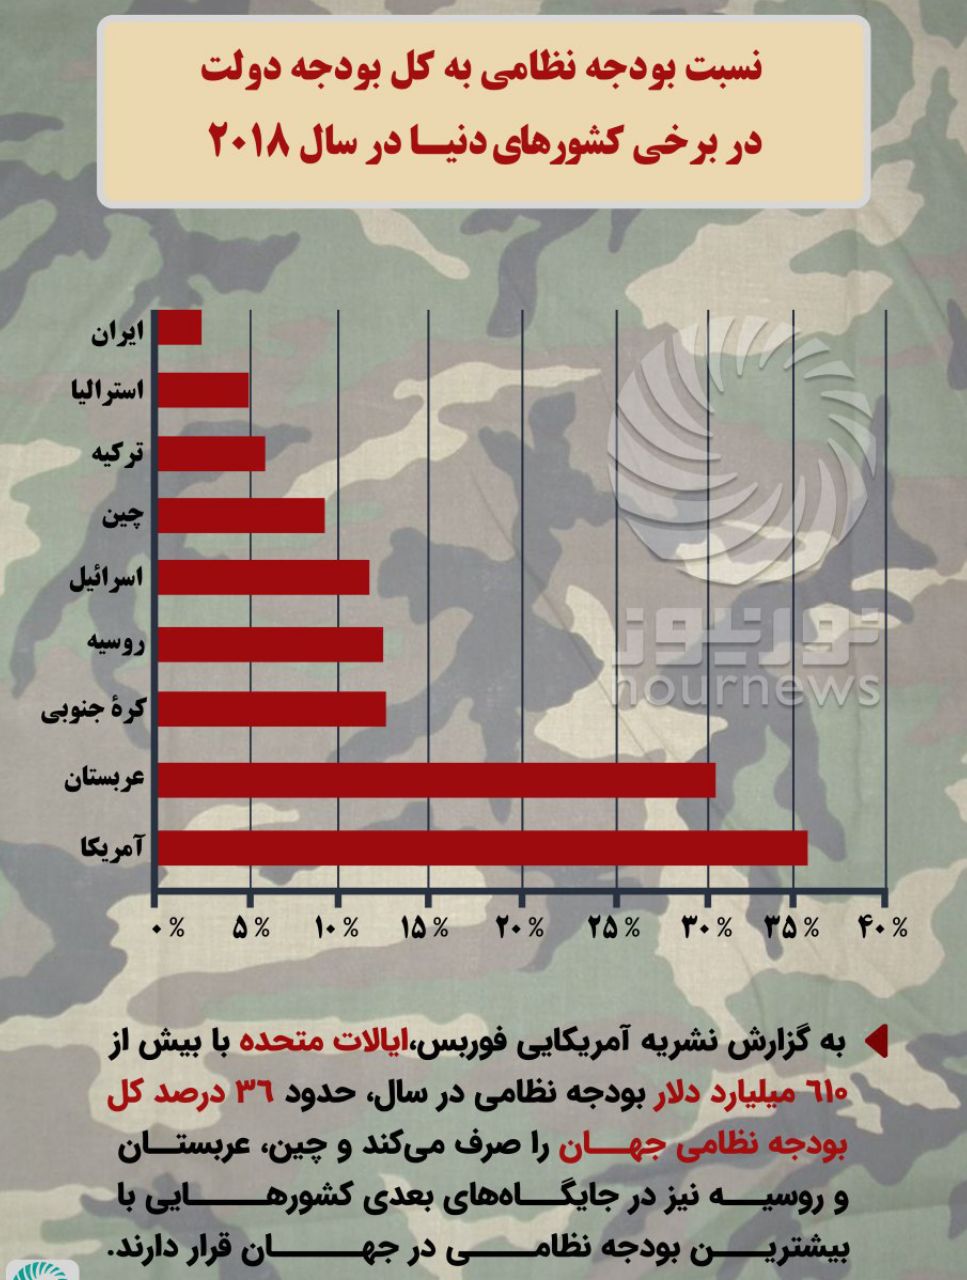 نسبت بودجه نظامی به کل بودجه دولت در برخی کشورها + عکس